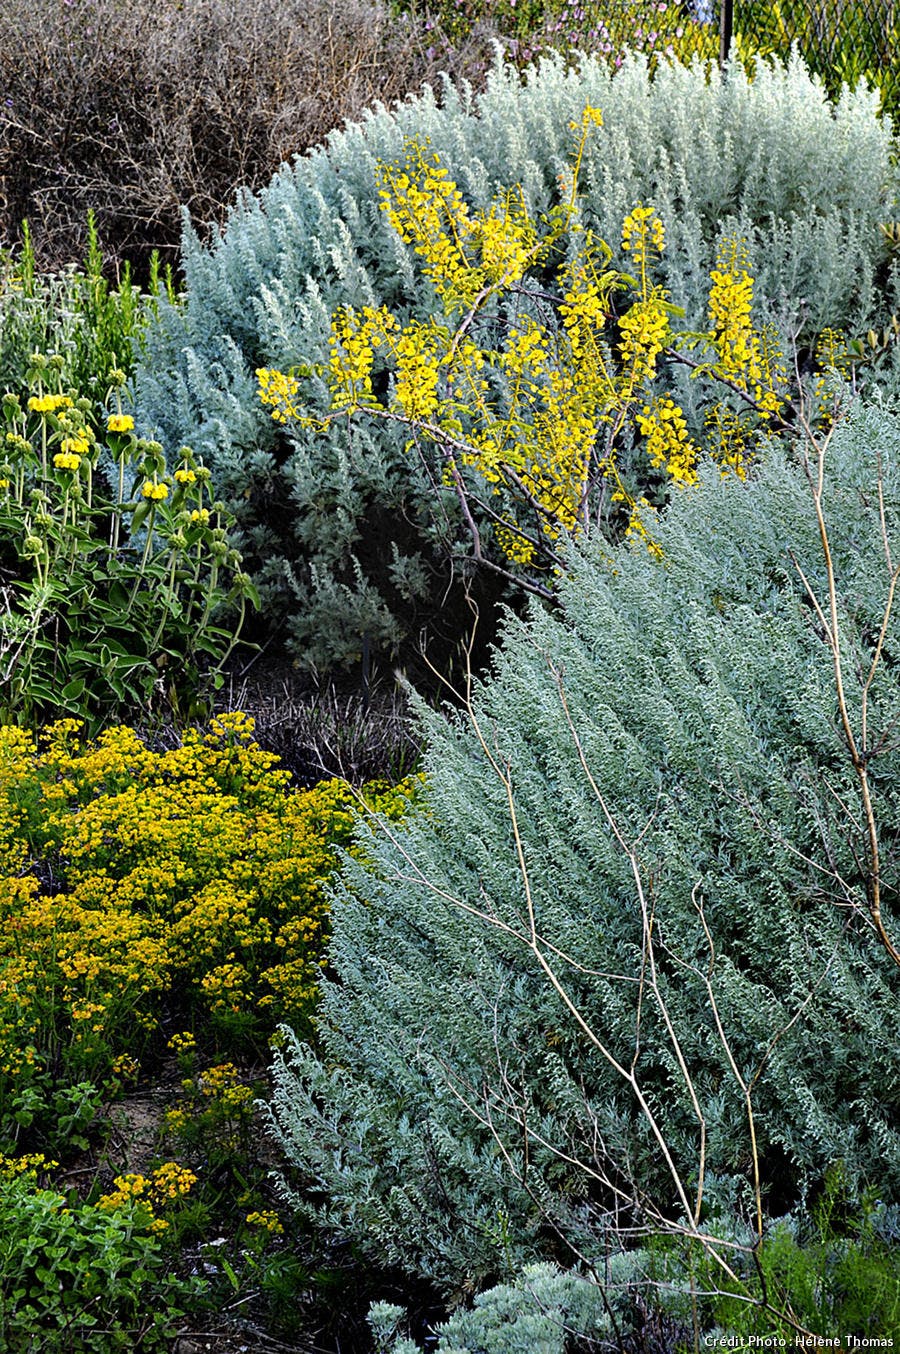 Artemisia canariensis